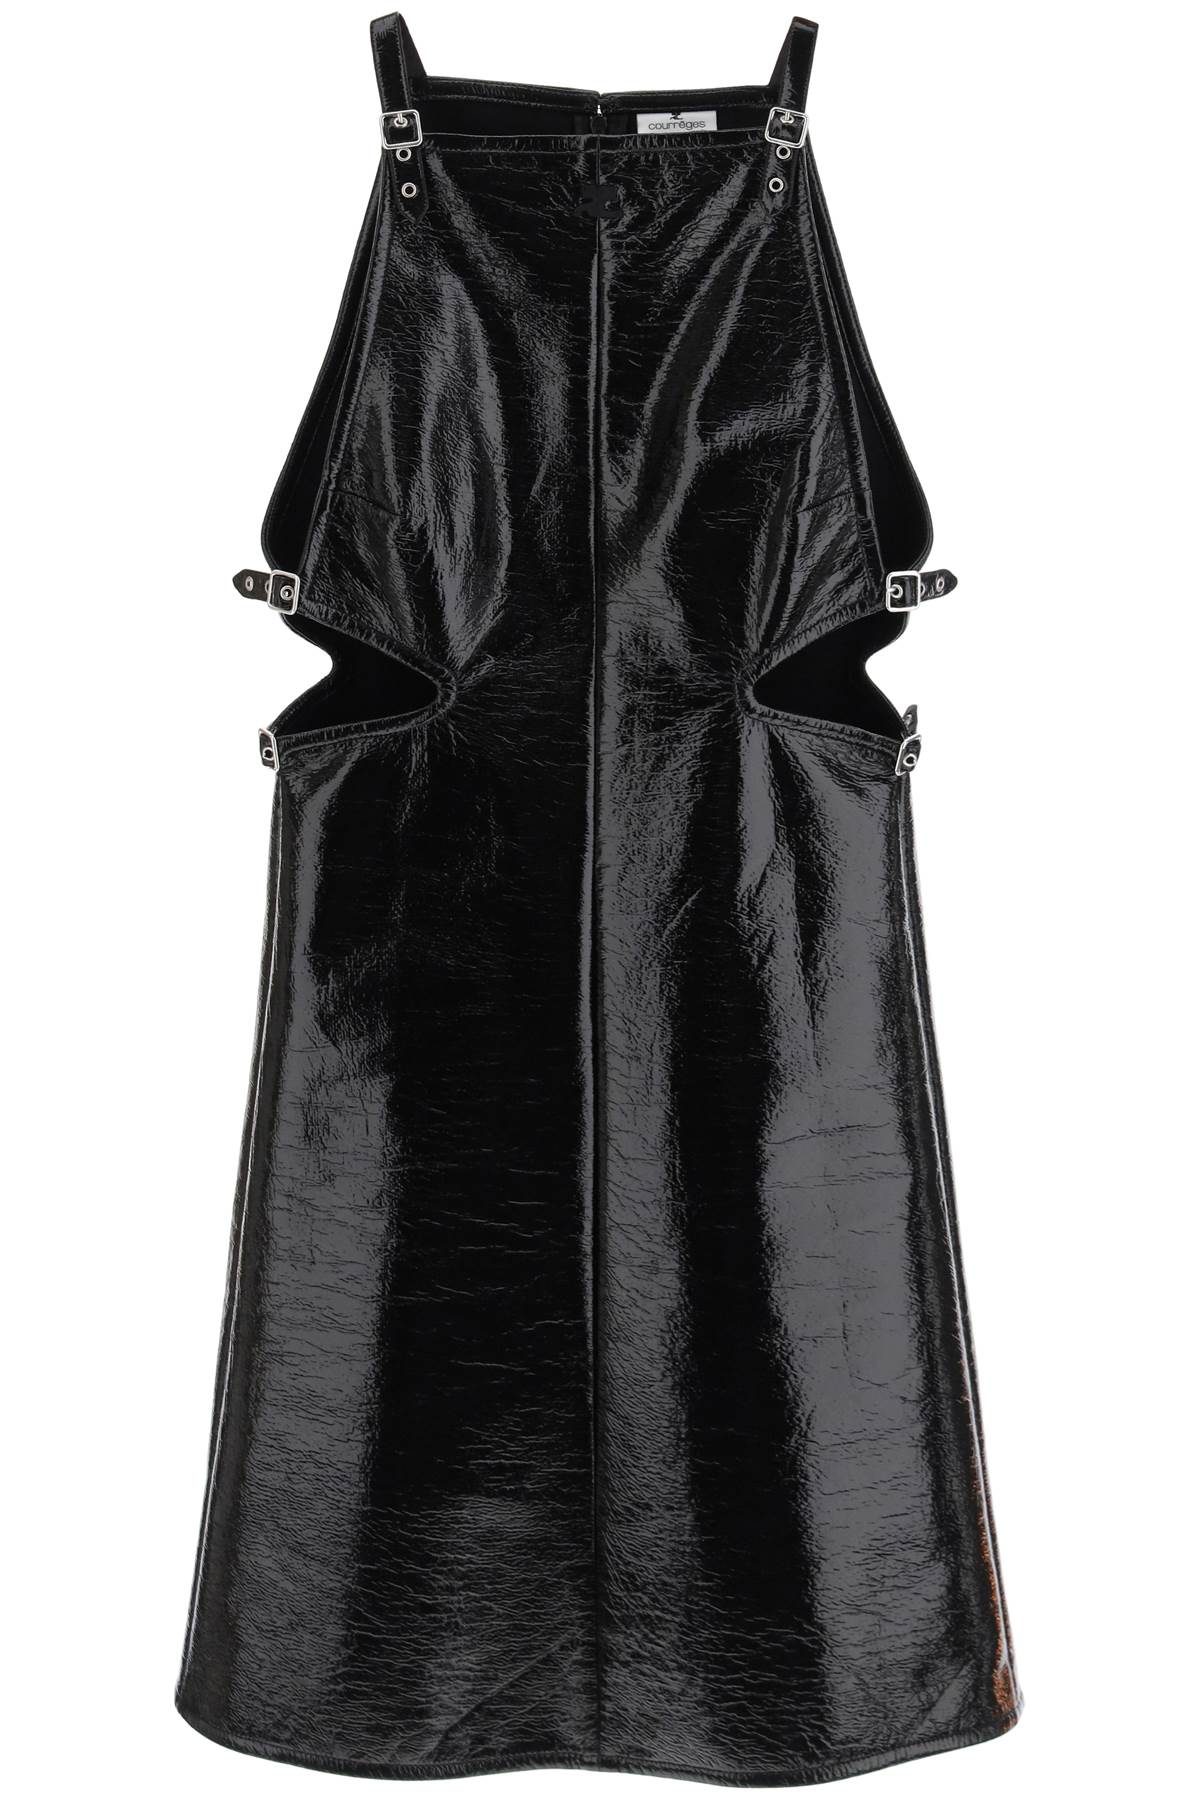 COURREGÈS Women's Black Vinyl Dress - SS24 Collection